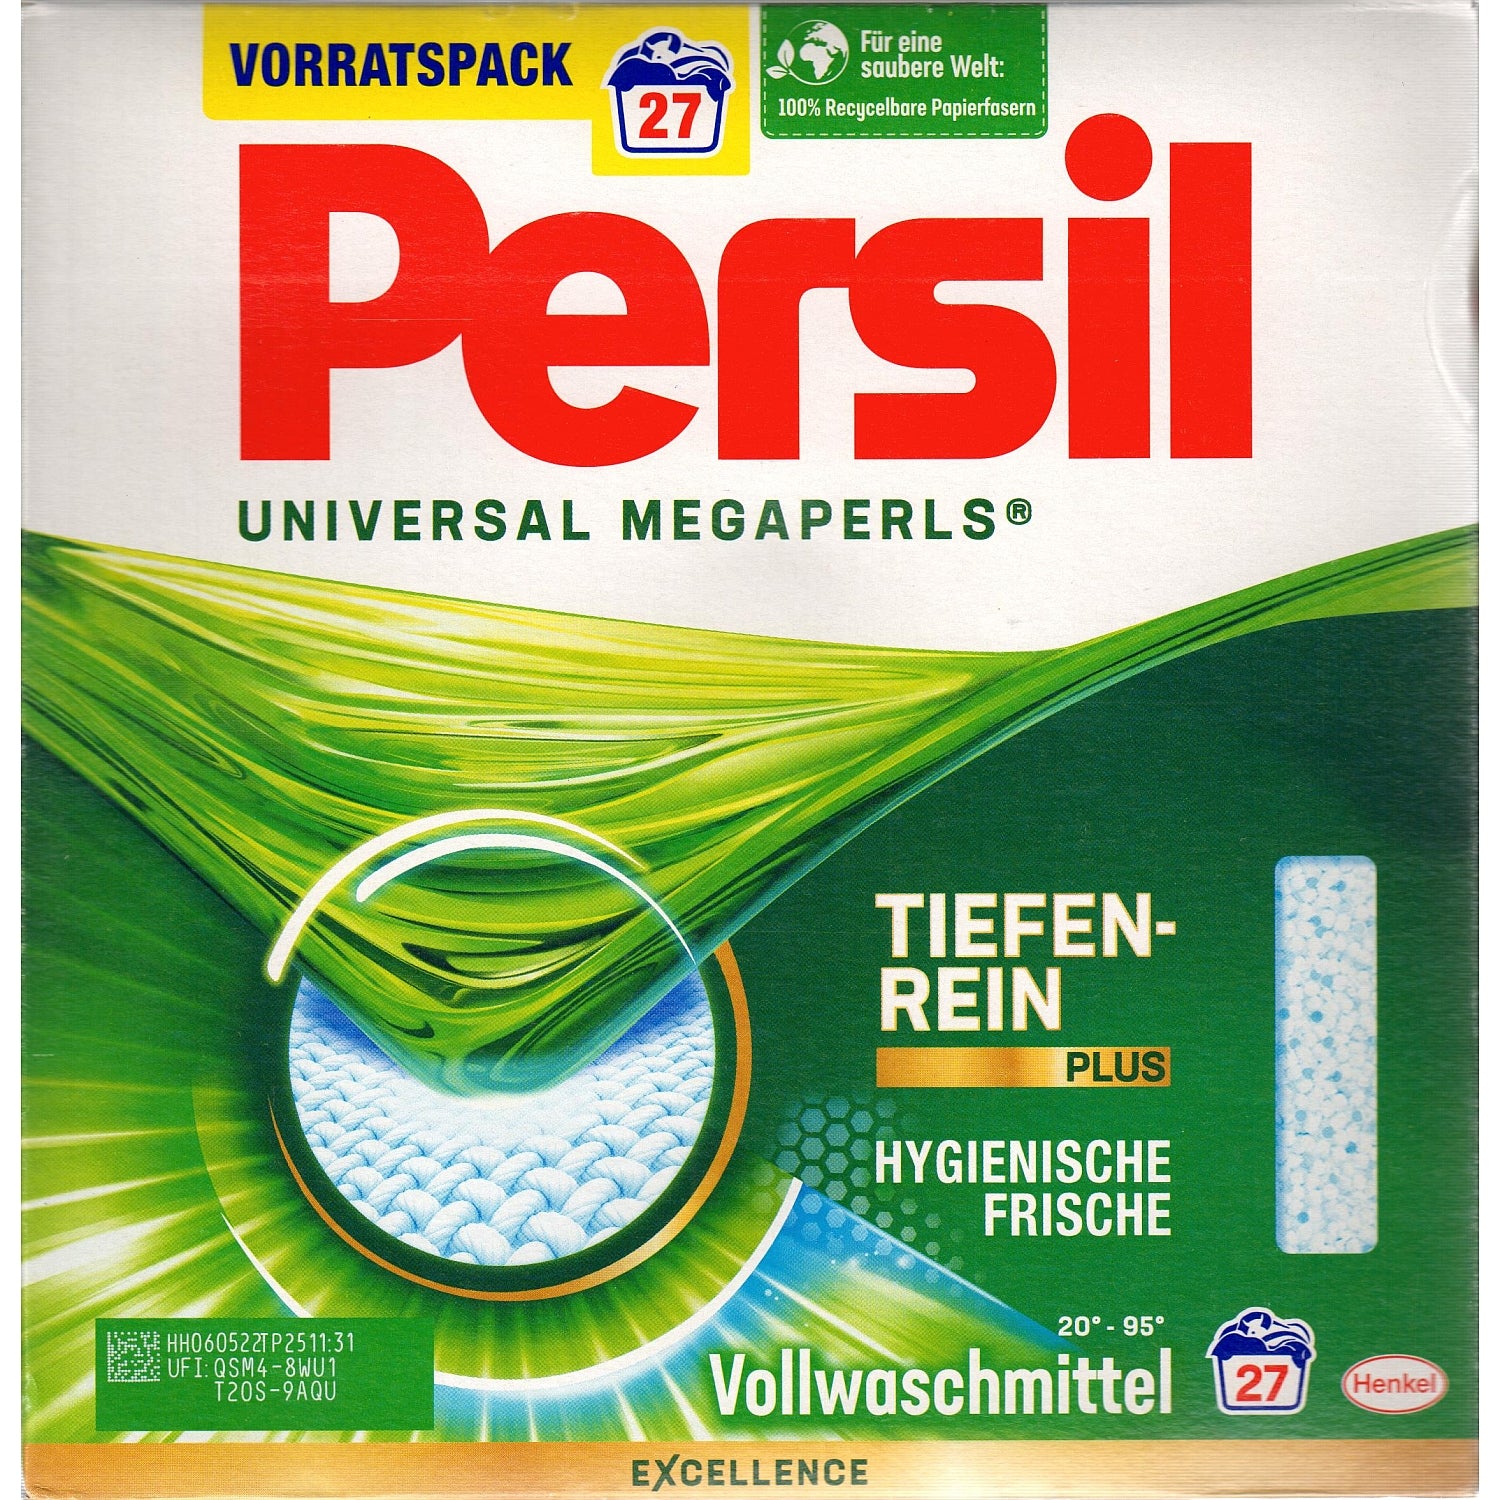 Persil Universal Megaperls 27 load - Buckhead Vacuums